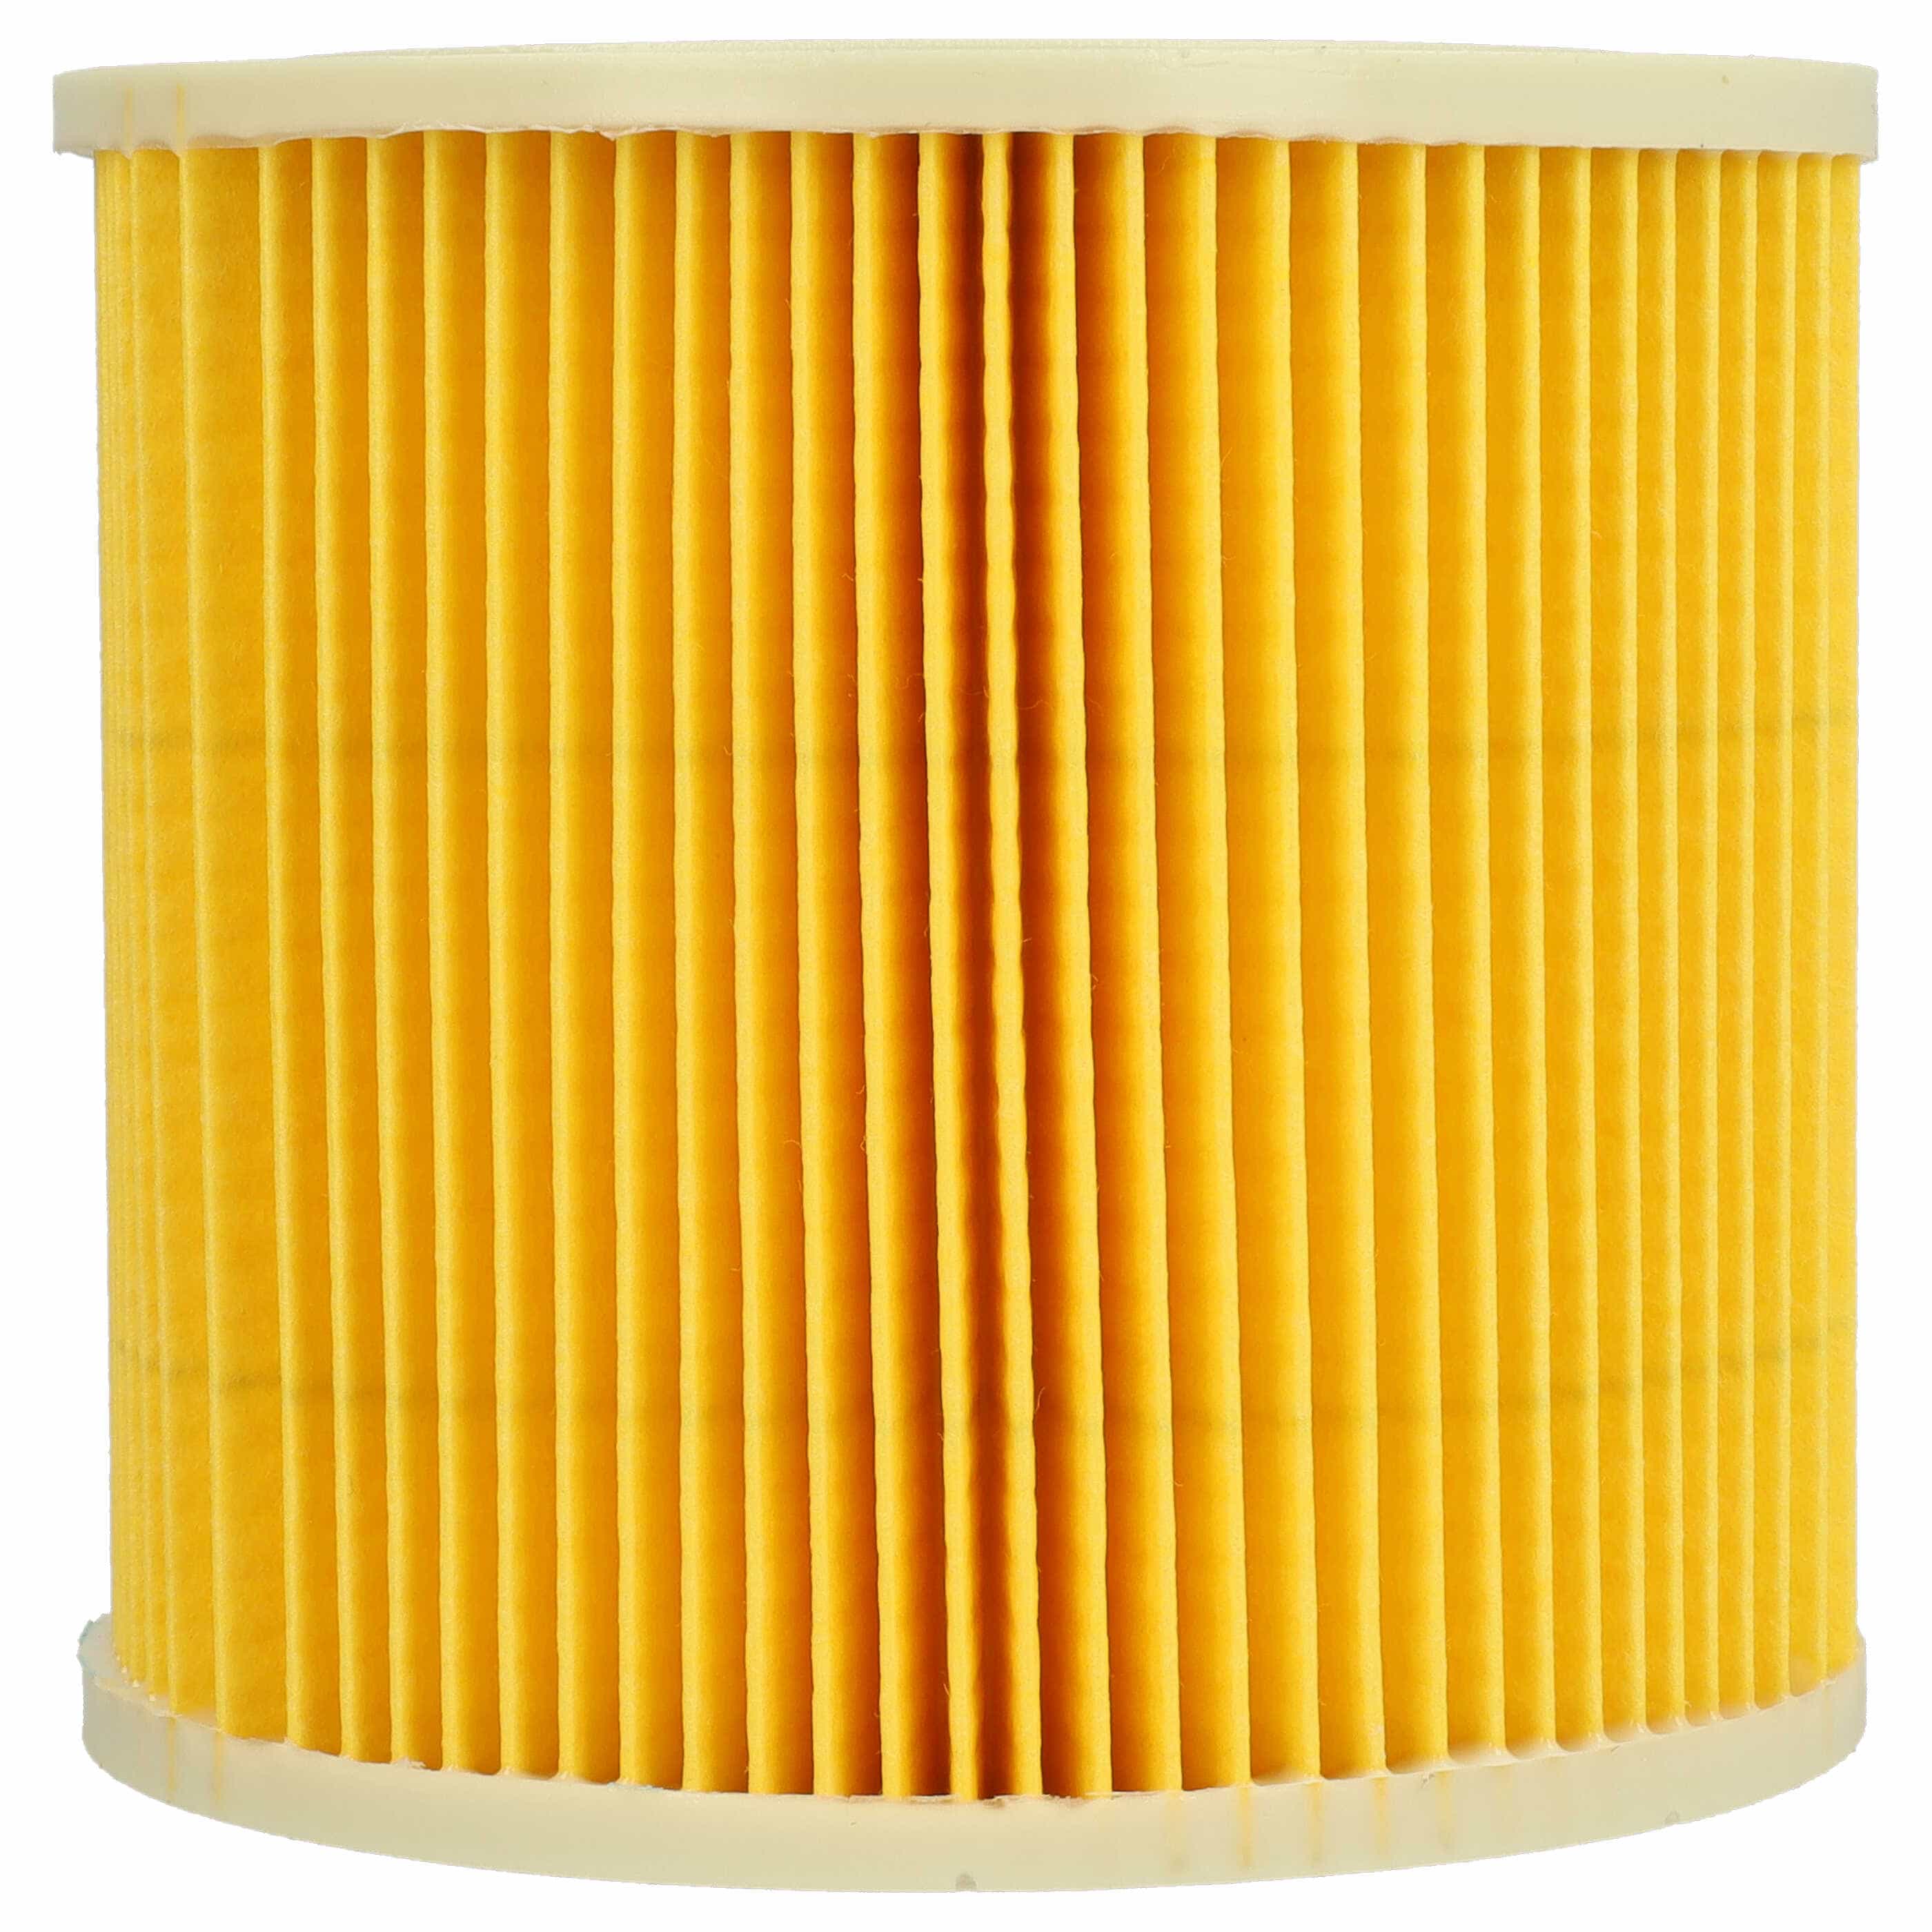 2x Filtro sostituisce Kärcher 6.414-547.0, 2.863-303.0 per aspirapolvere - filtro cartucce, giallo